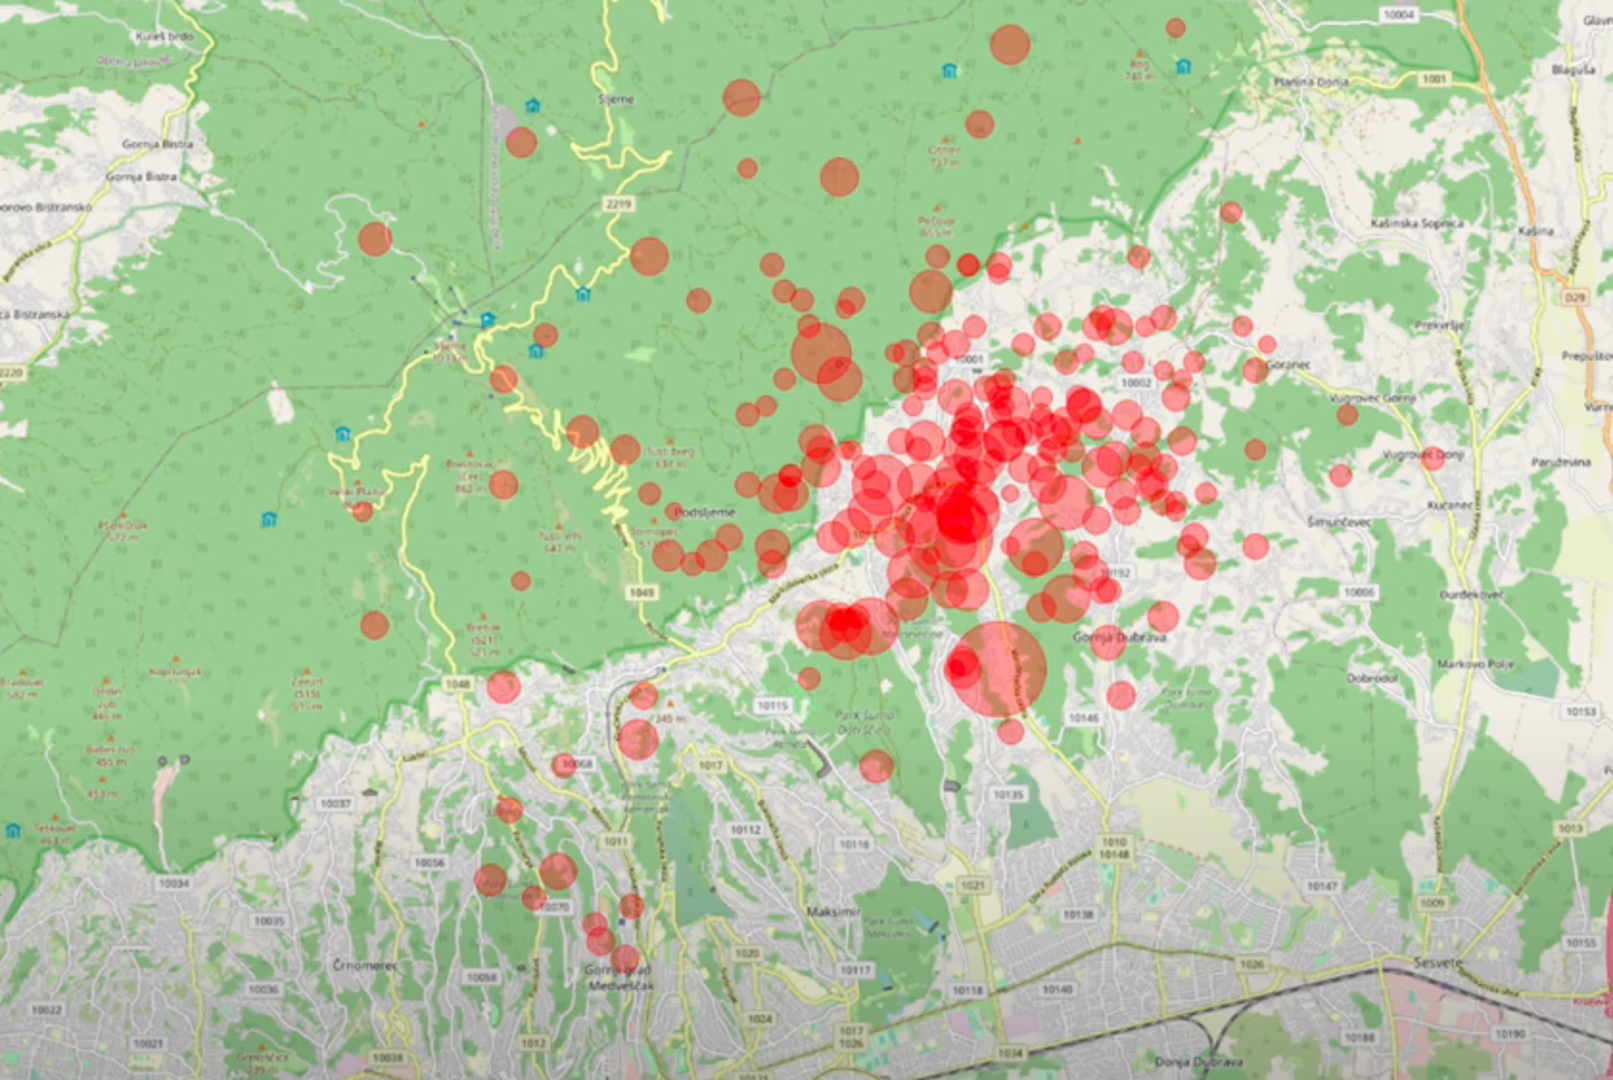 Svi potresi u Zagrebu od onog 22. ožujka: Bilo ih je oko 1000!